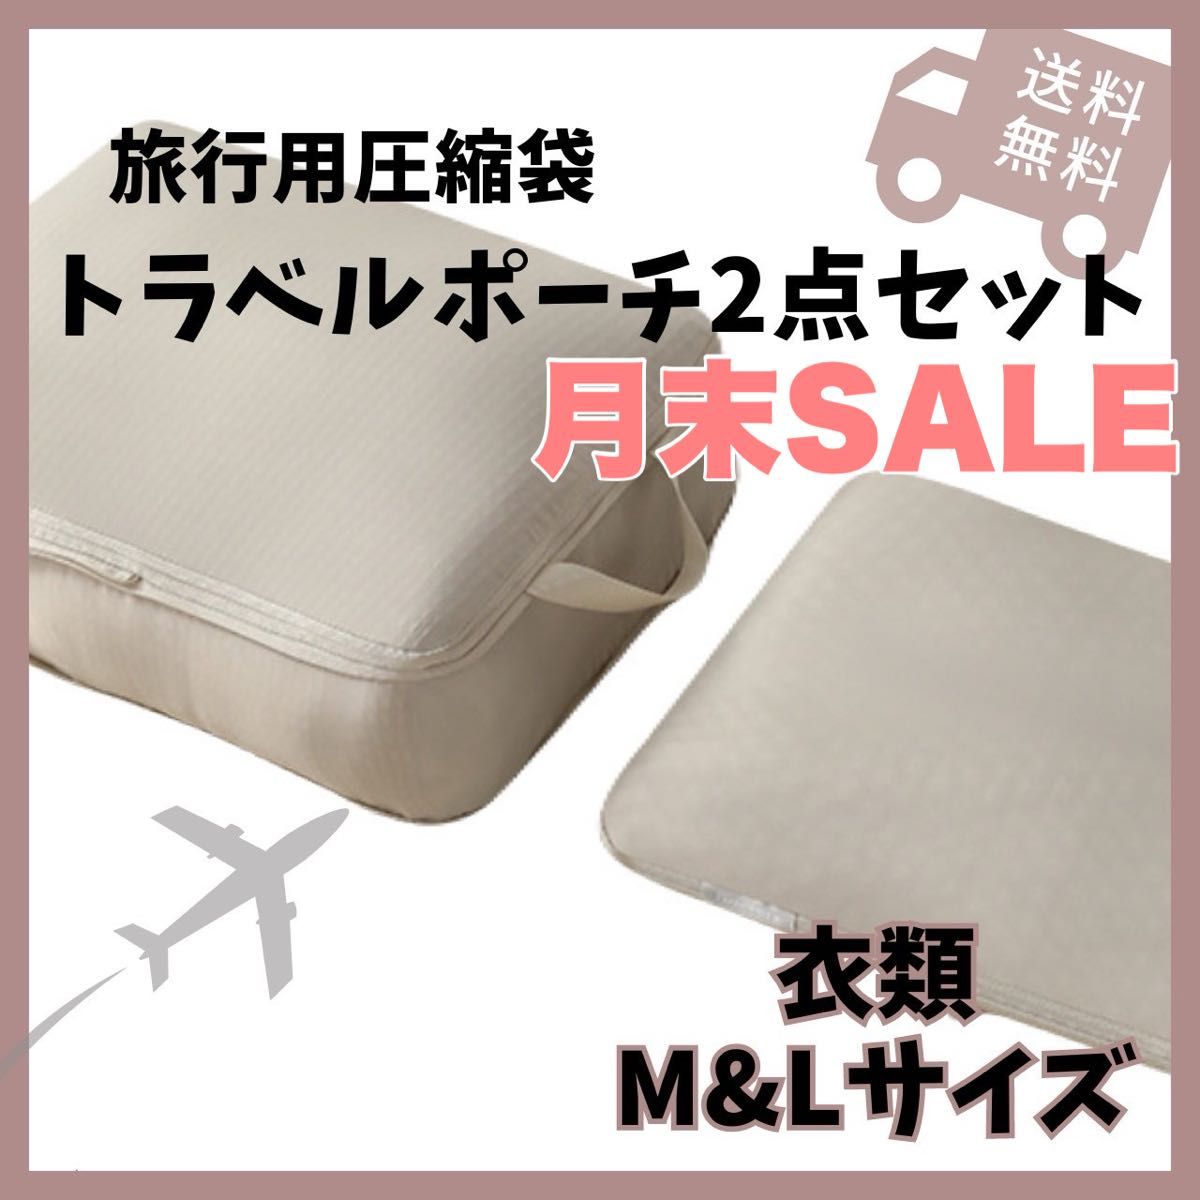 ☆SALE☆ トラベルポーチ 衣類圧縮袋 圧縮ポーチ 2点 旅行 パッキング 収納